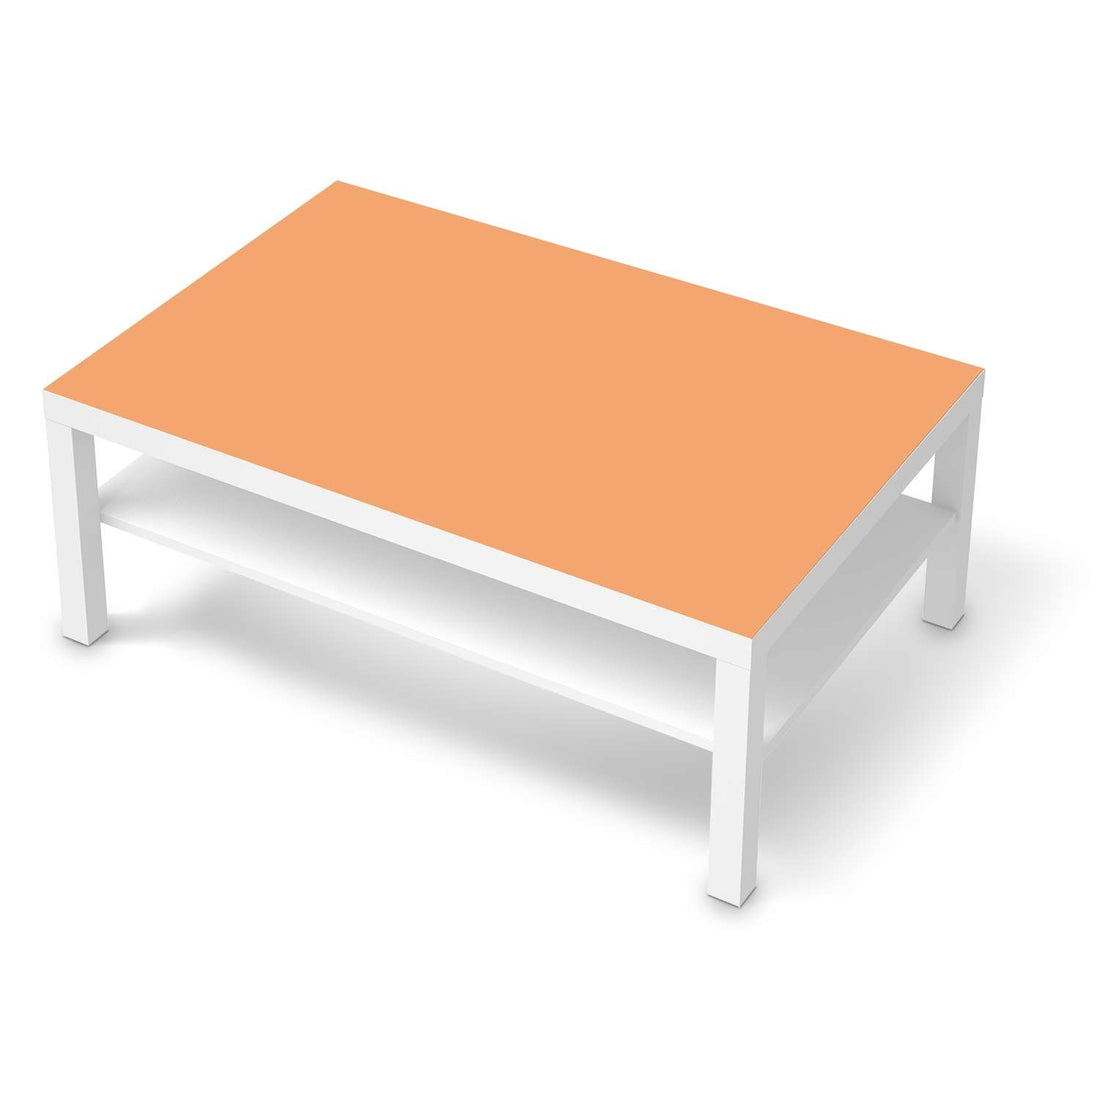 Klebefolie Orange Light - IKEA Lack Tisch 118x78 cm - weiss